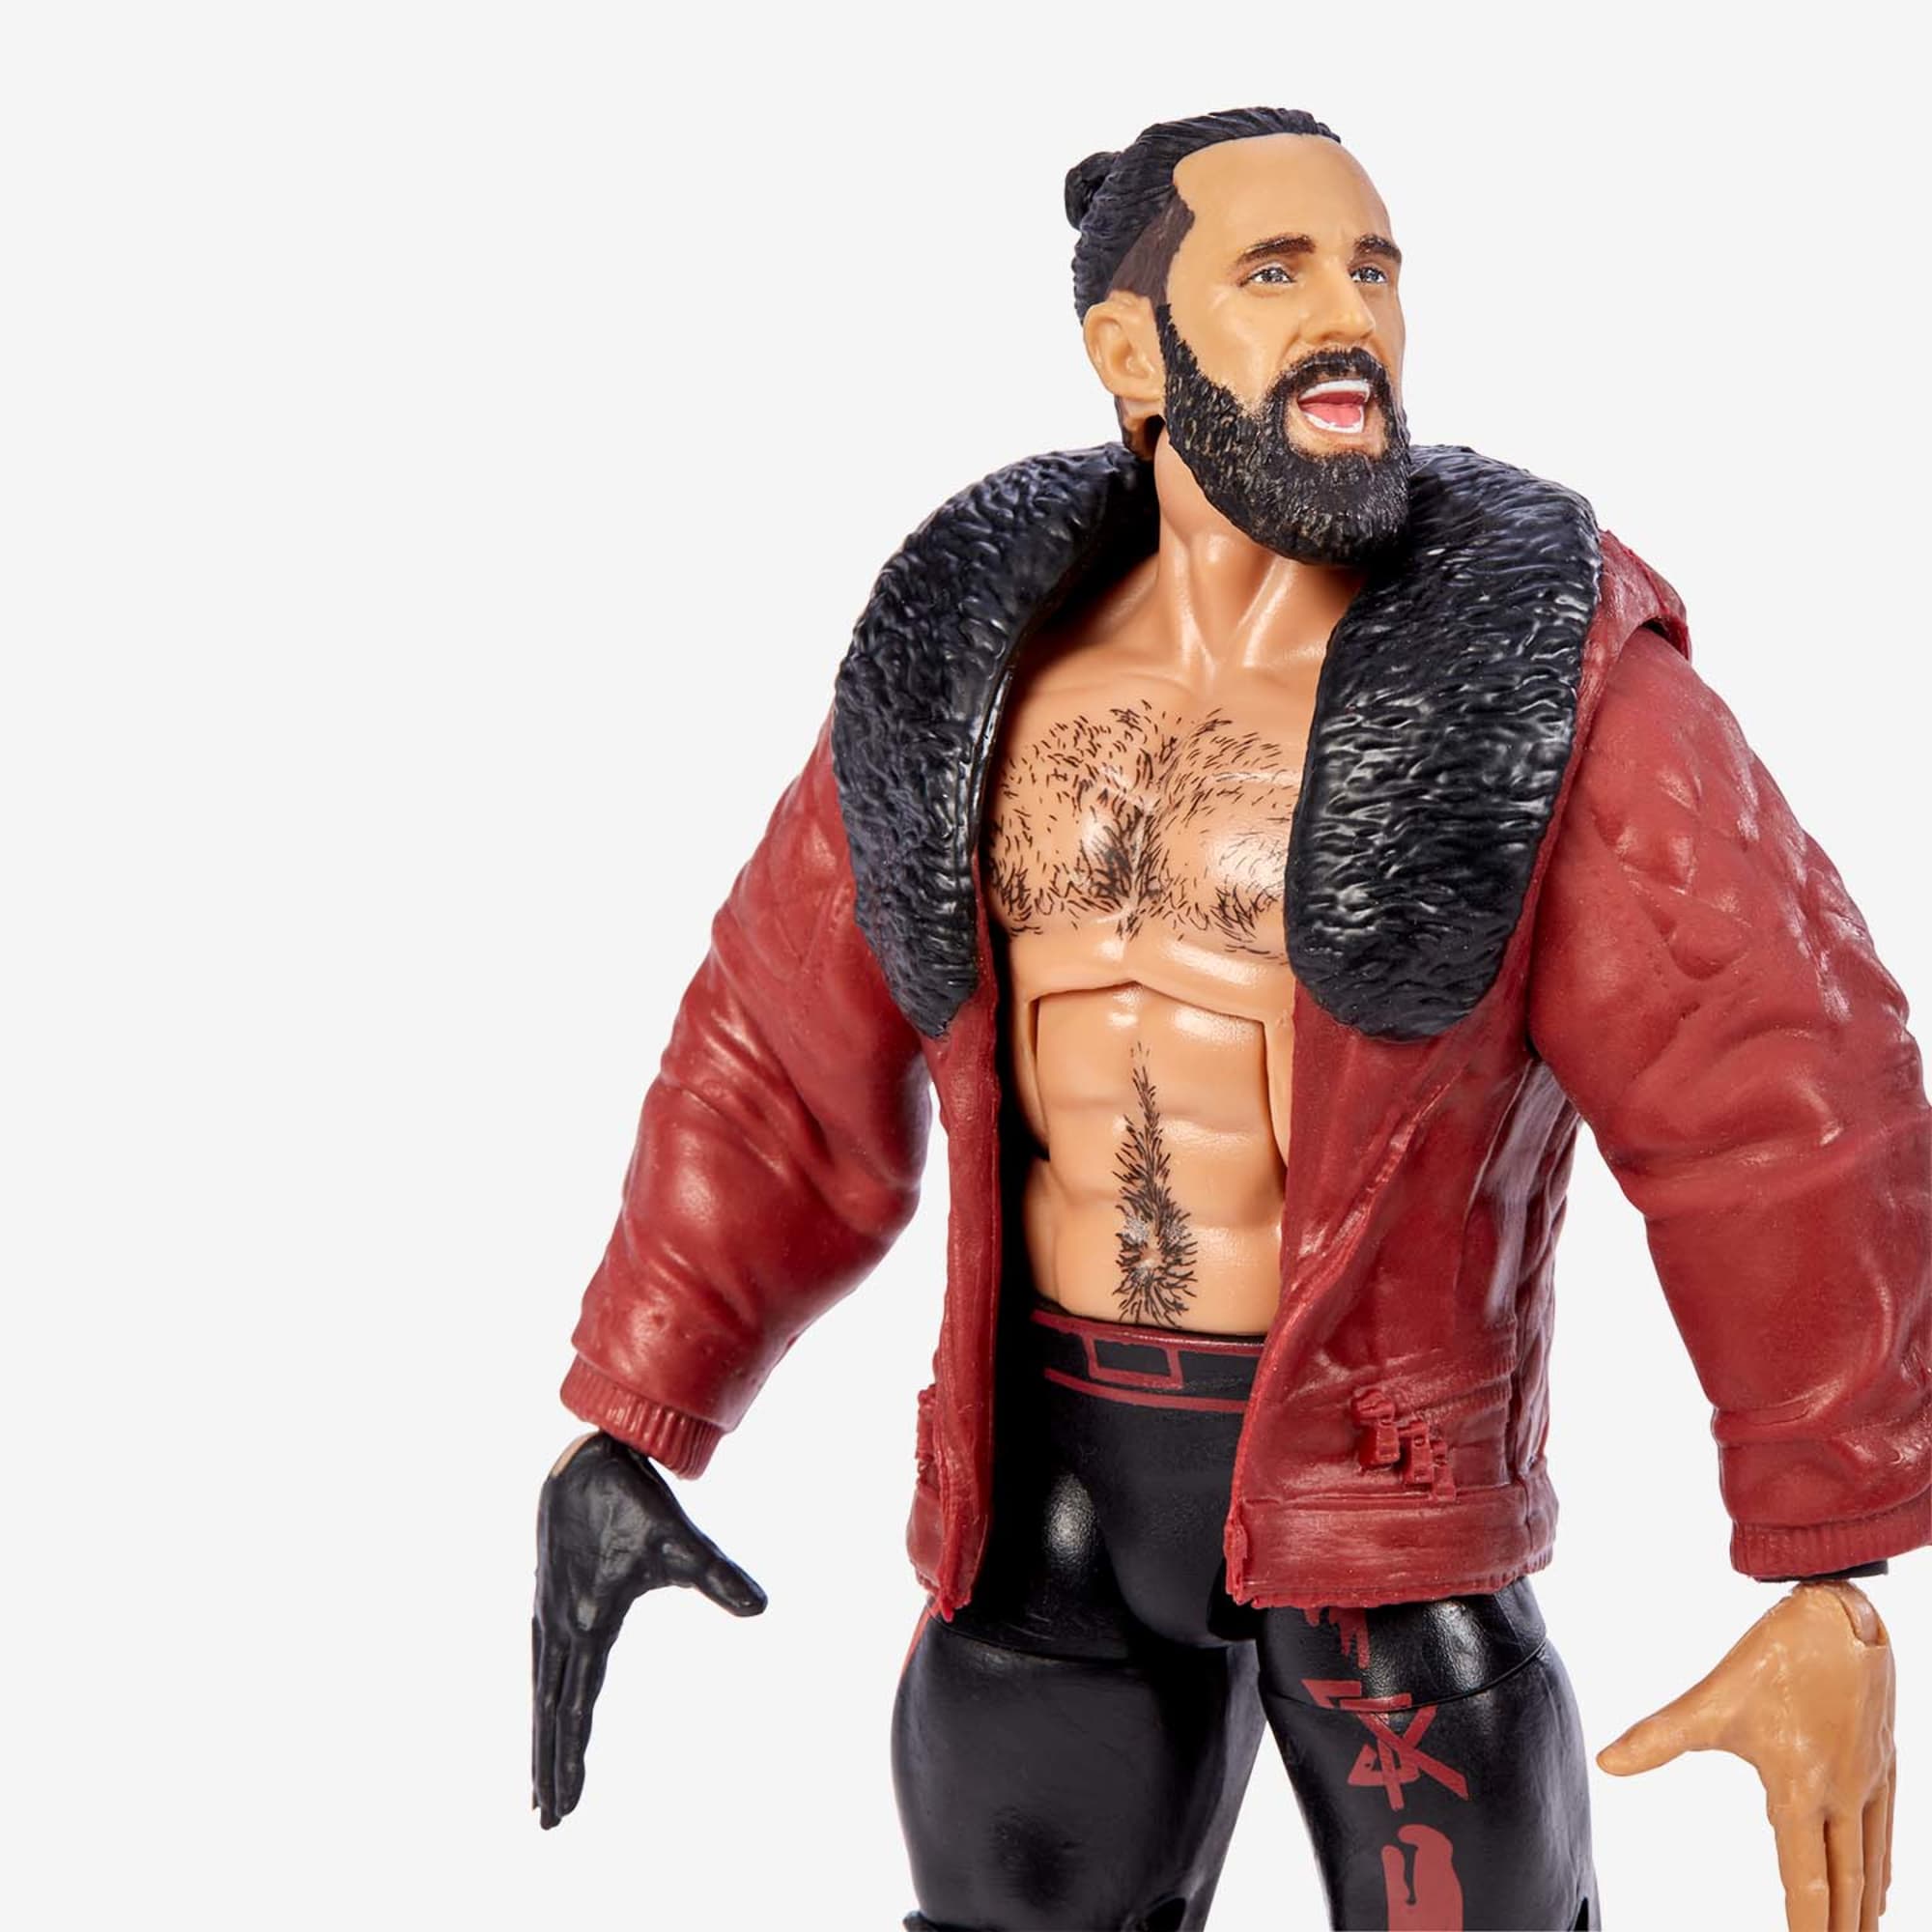 WWE Figuras de Acción, WWE Elite Seth Rollins Figura con Accesorios